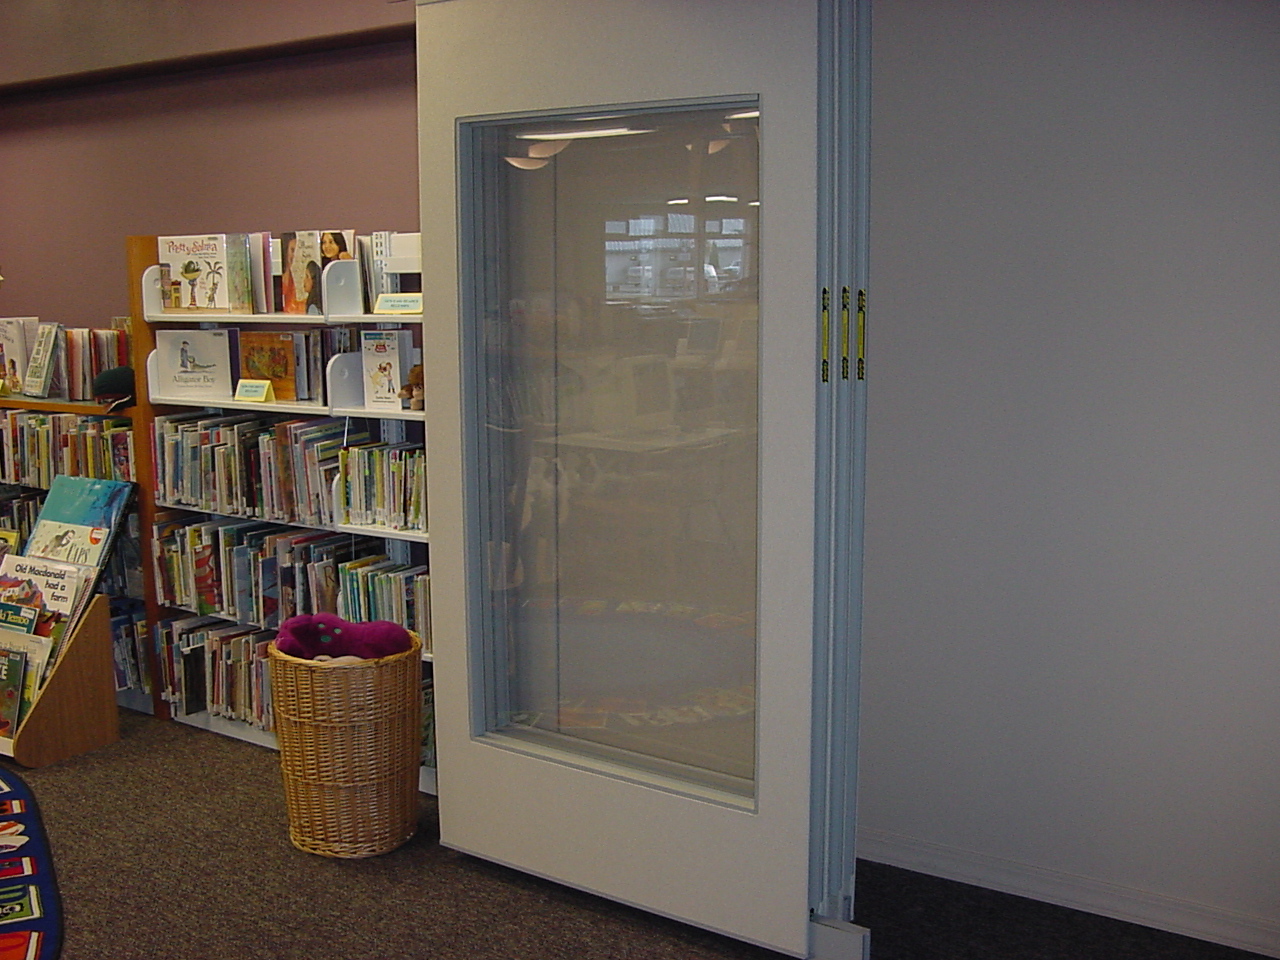 New library community meeting door!